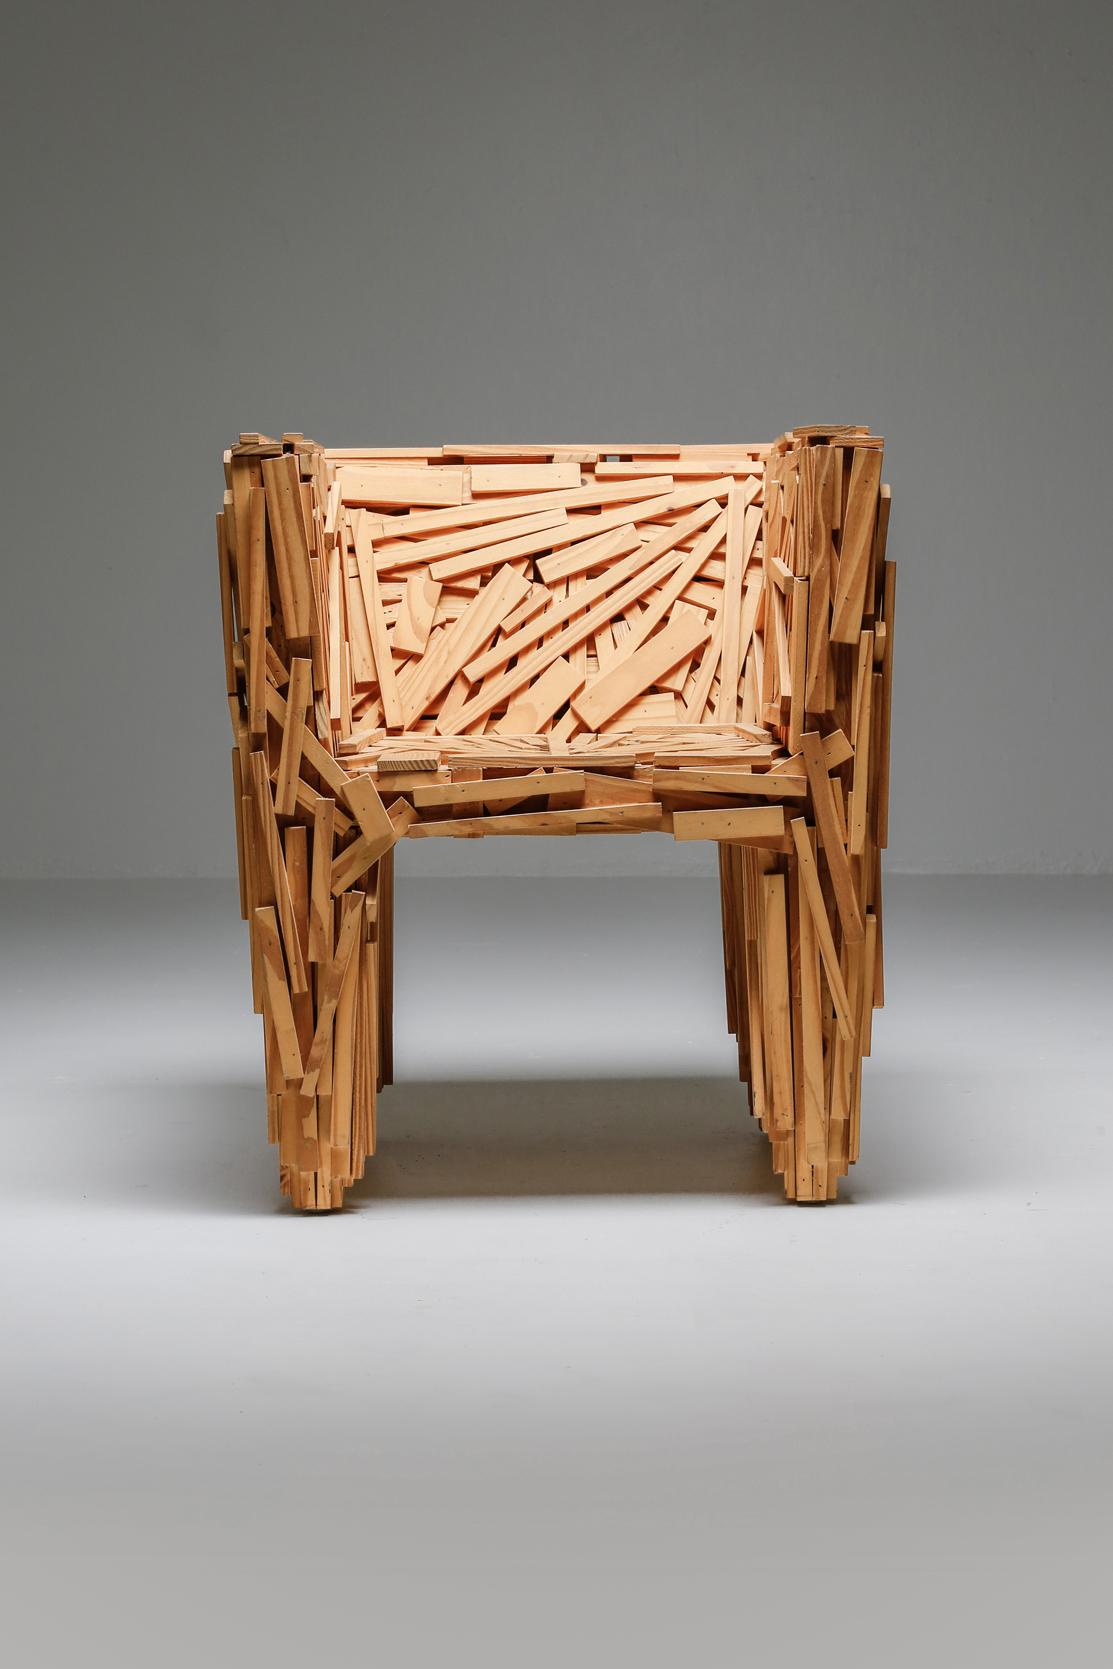 Contemporary Favela Chair by Estudio Campana for Edra